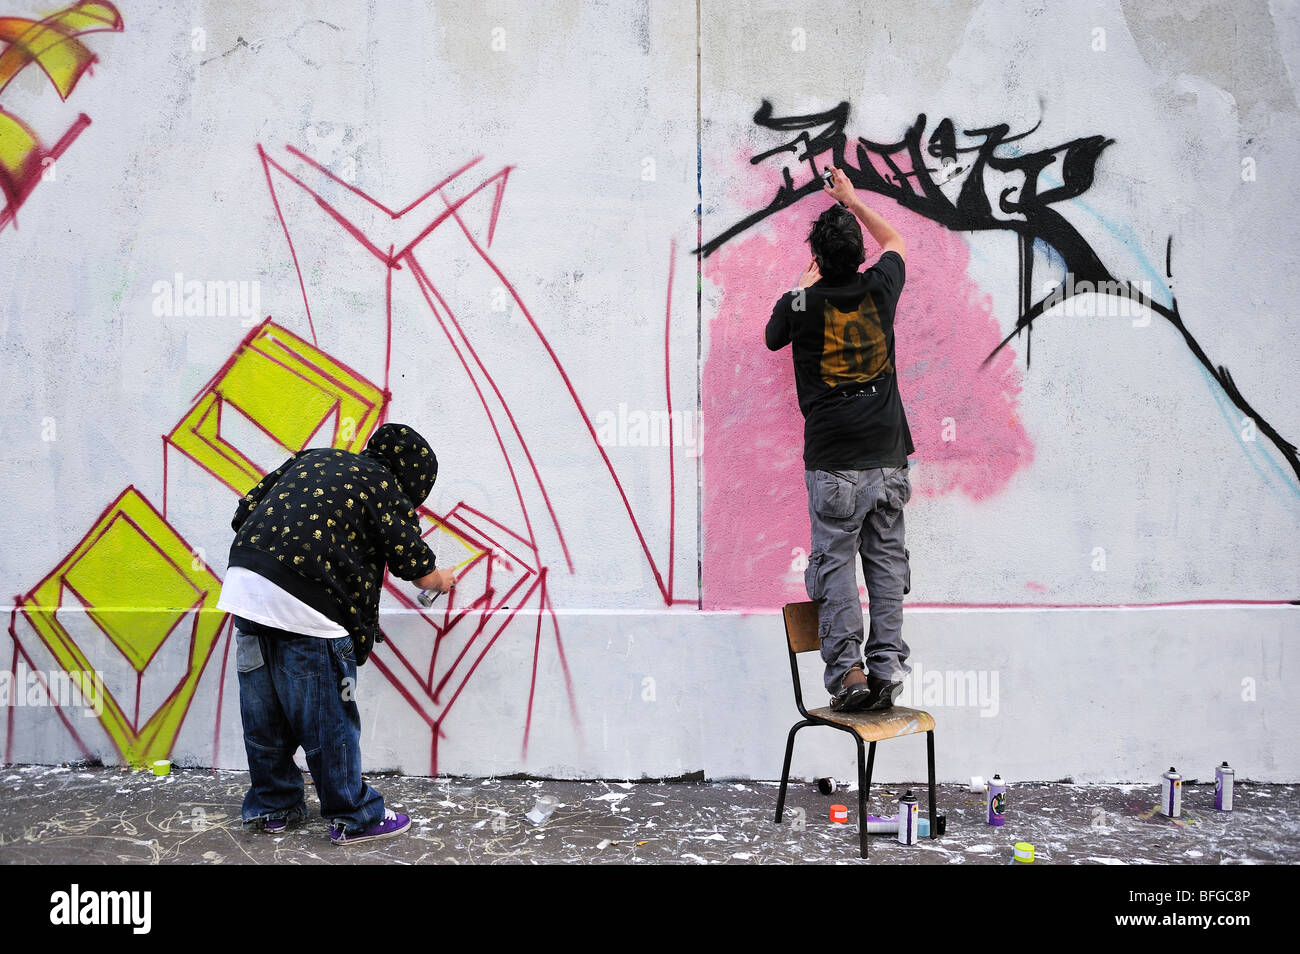 Paris, France, scène de rue, deux jeunes hommes adolescents, Graffers de rue, mur de peinture avec peinture en aérosol, Graffiti Banque D'Images